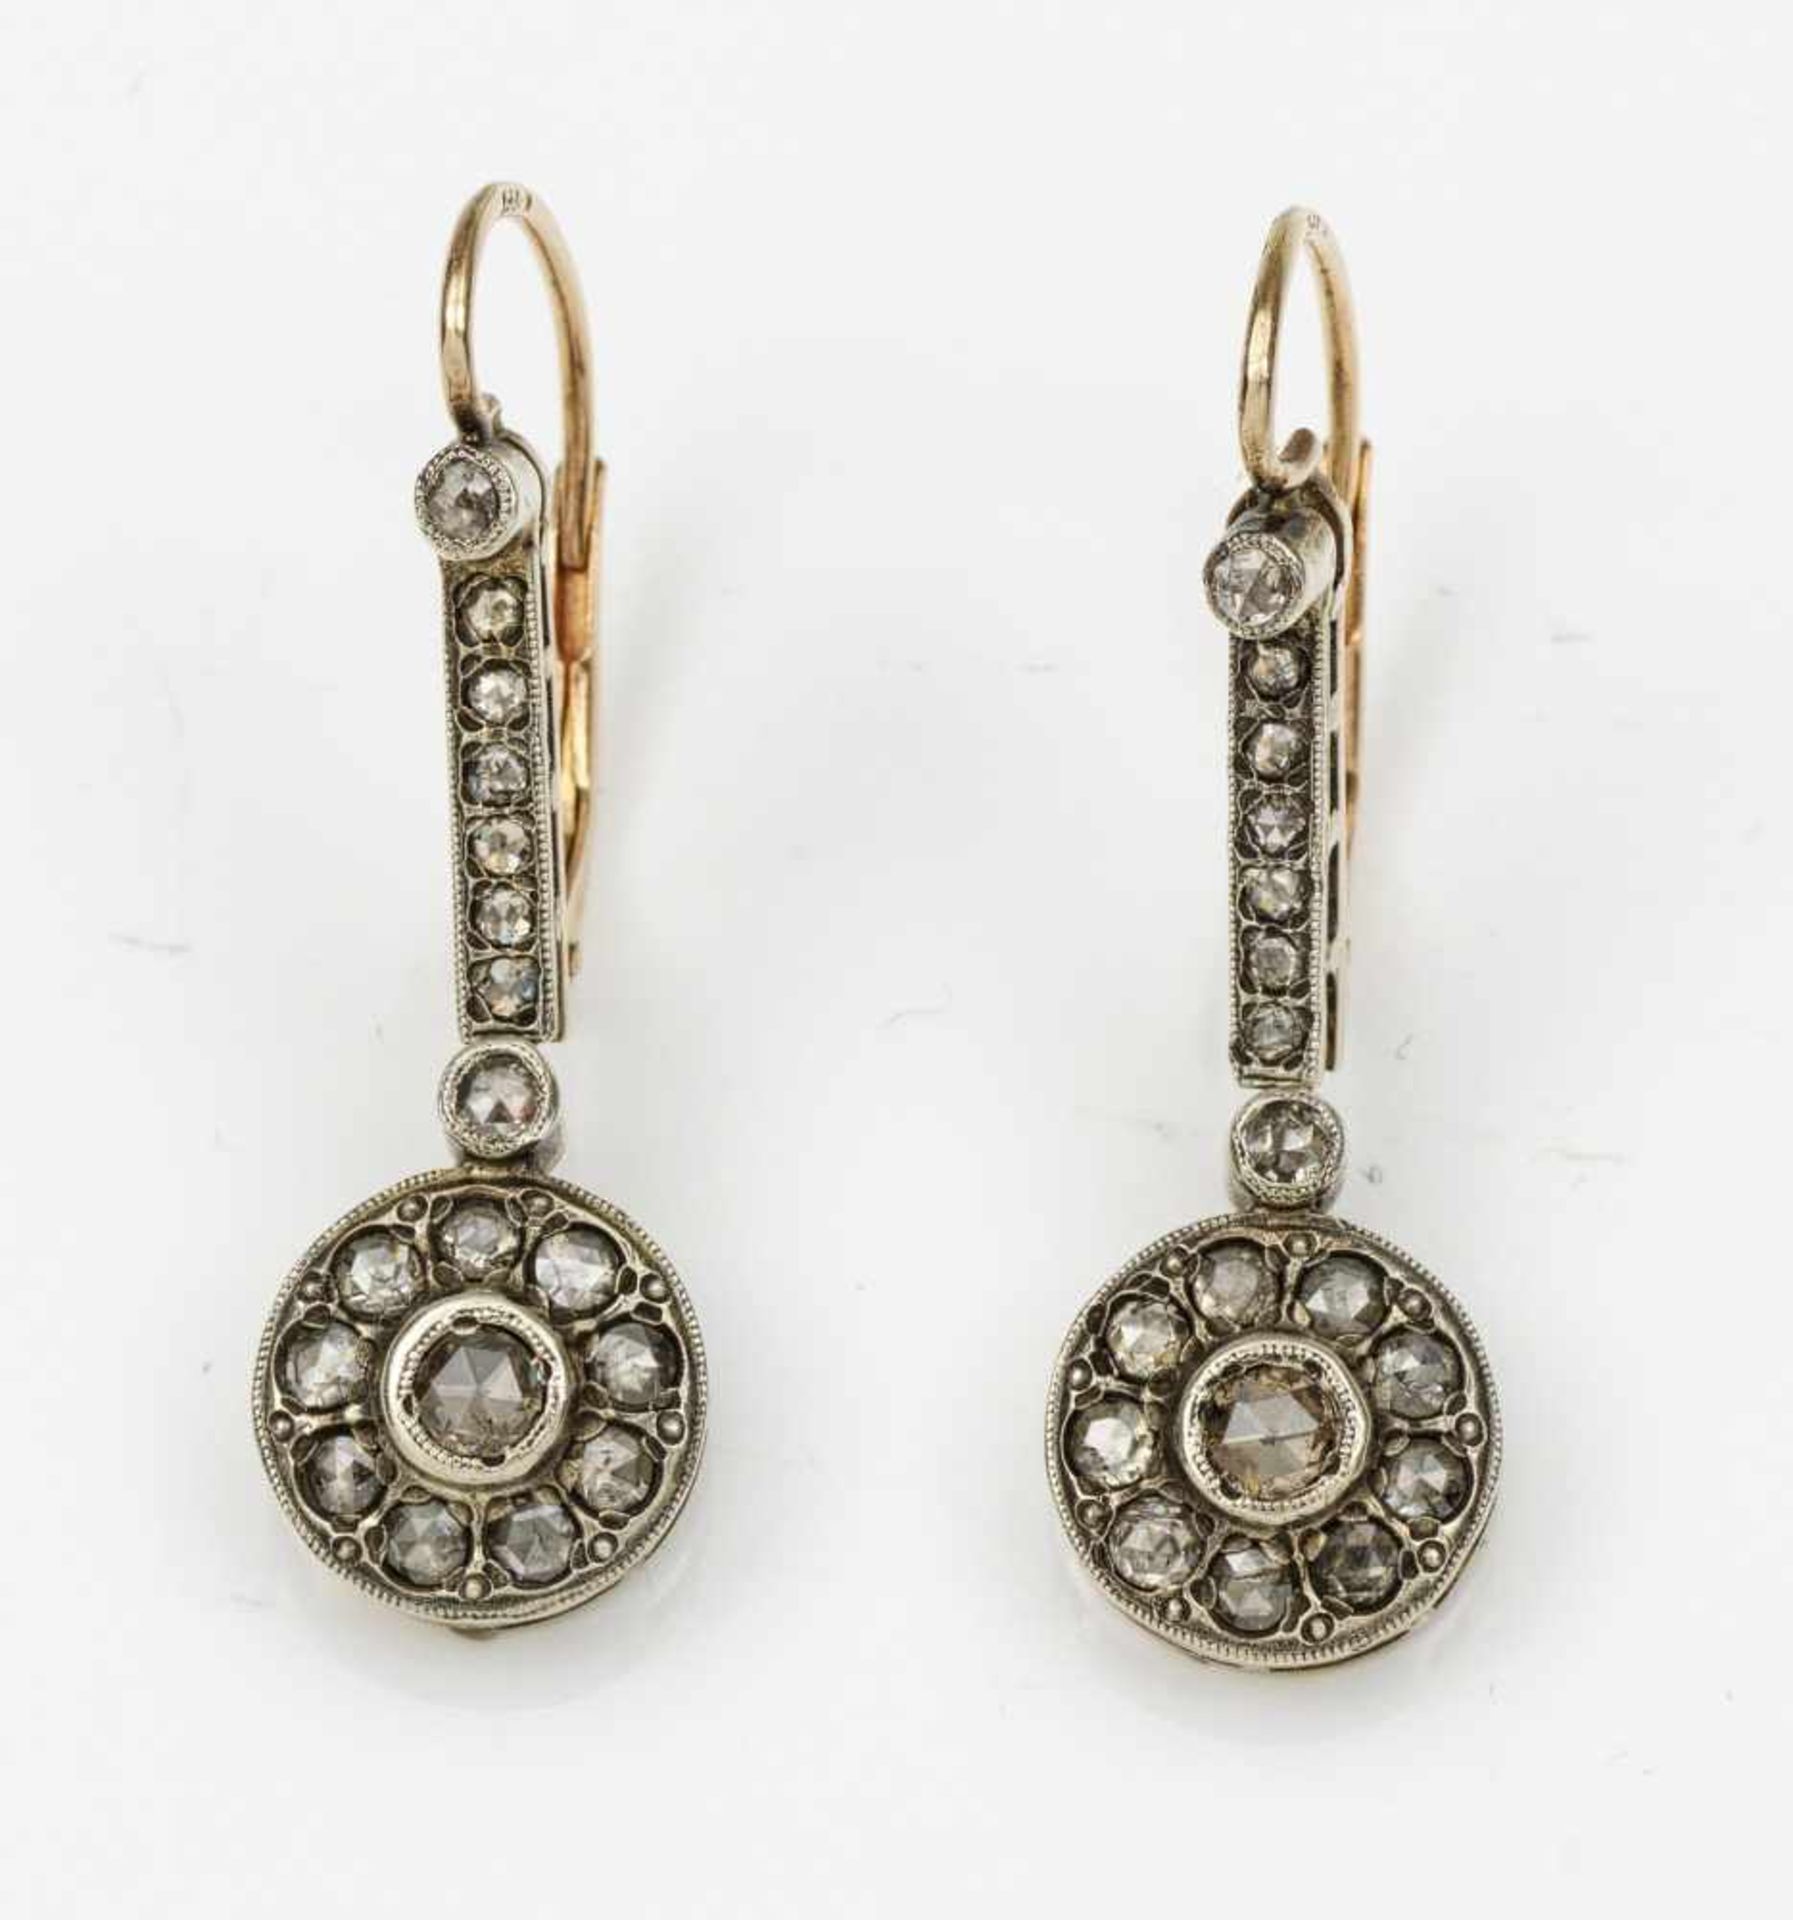 Paar Russische Diamant-OhrringeGelbgold, teilw. mit Silber verbödet, gest. 56 (584). Schauseitig